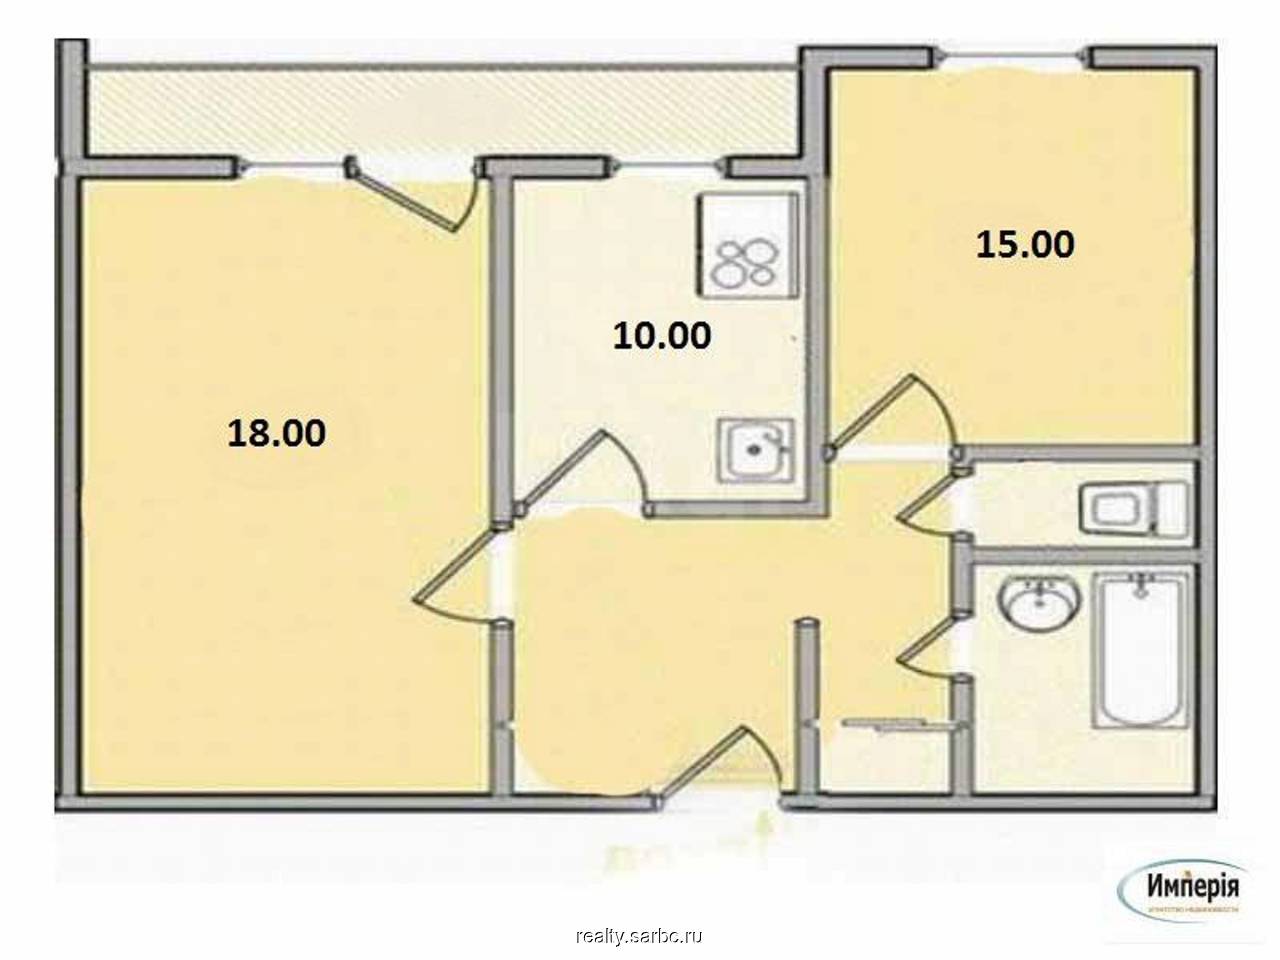 Планировка 2х комнатной квартиры чешка